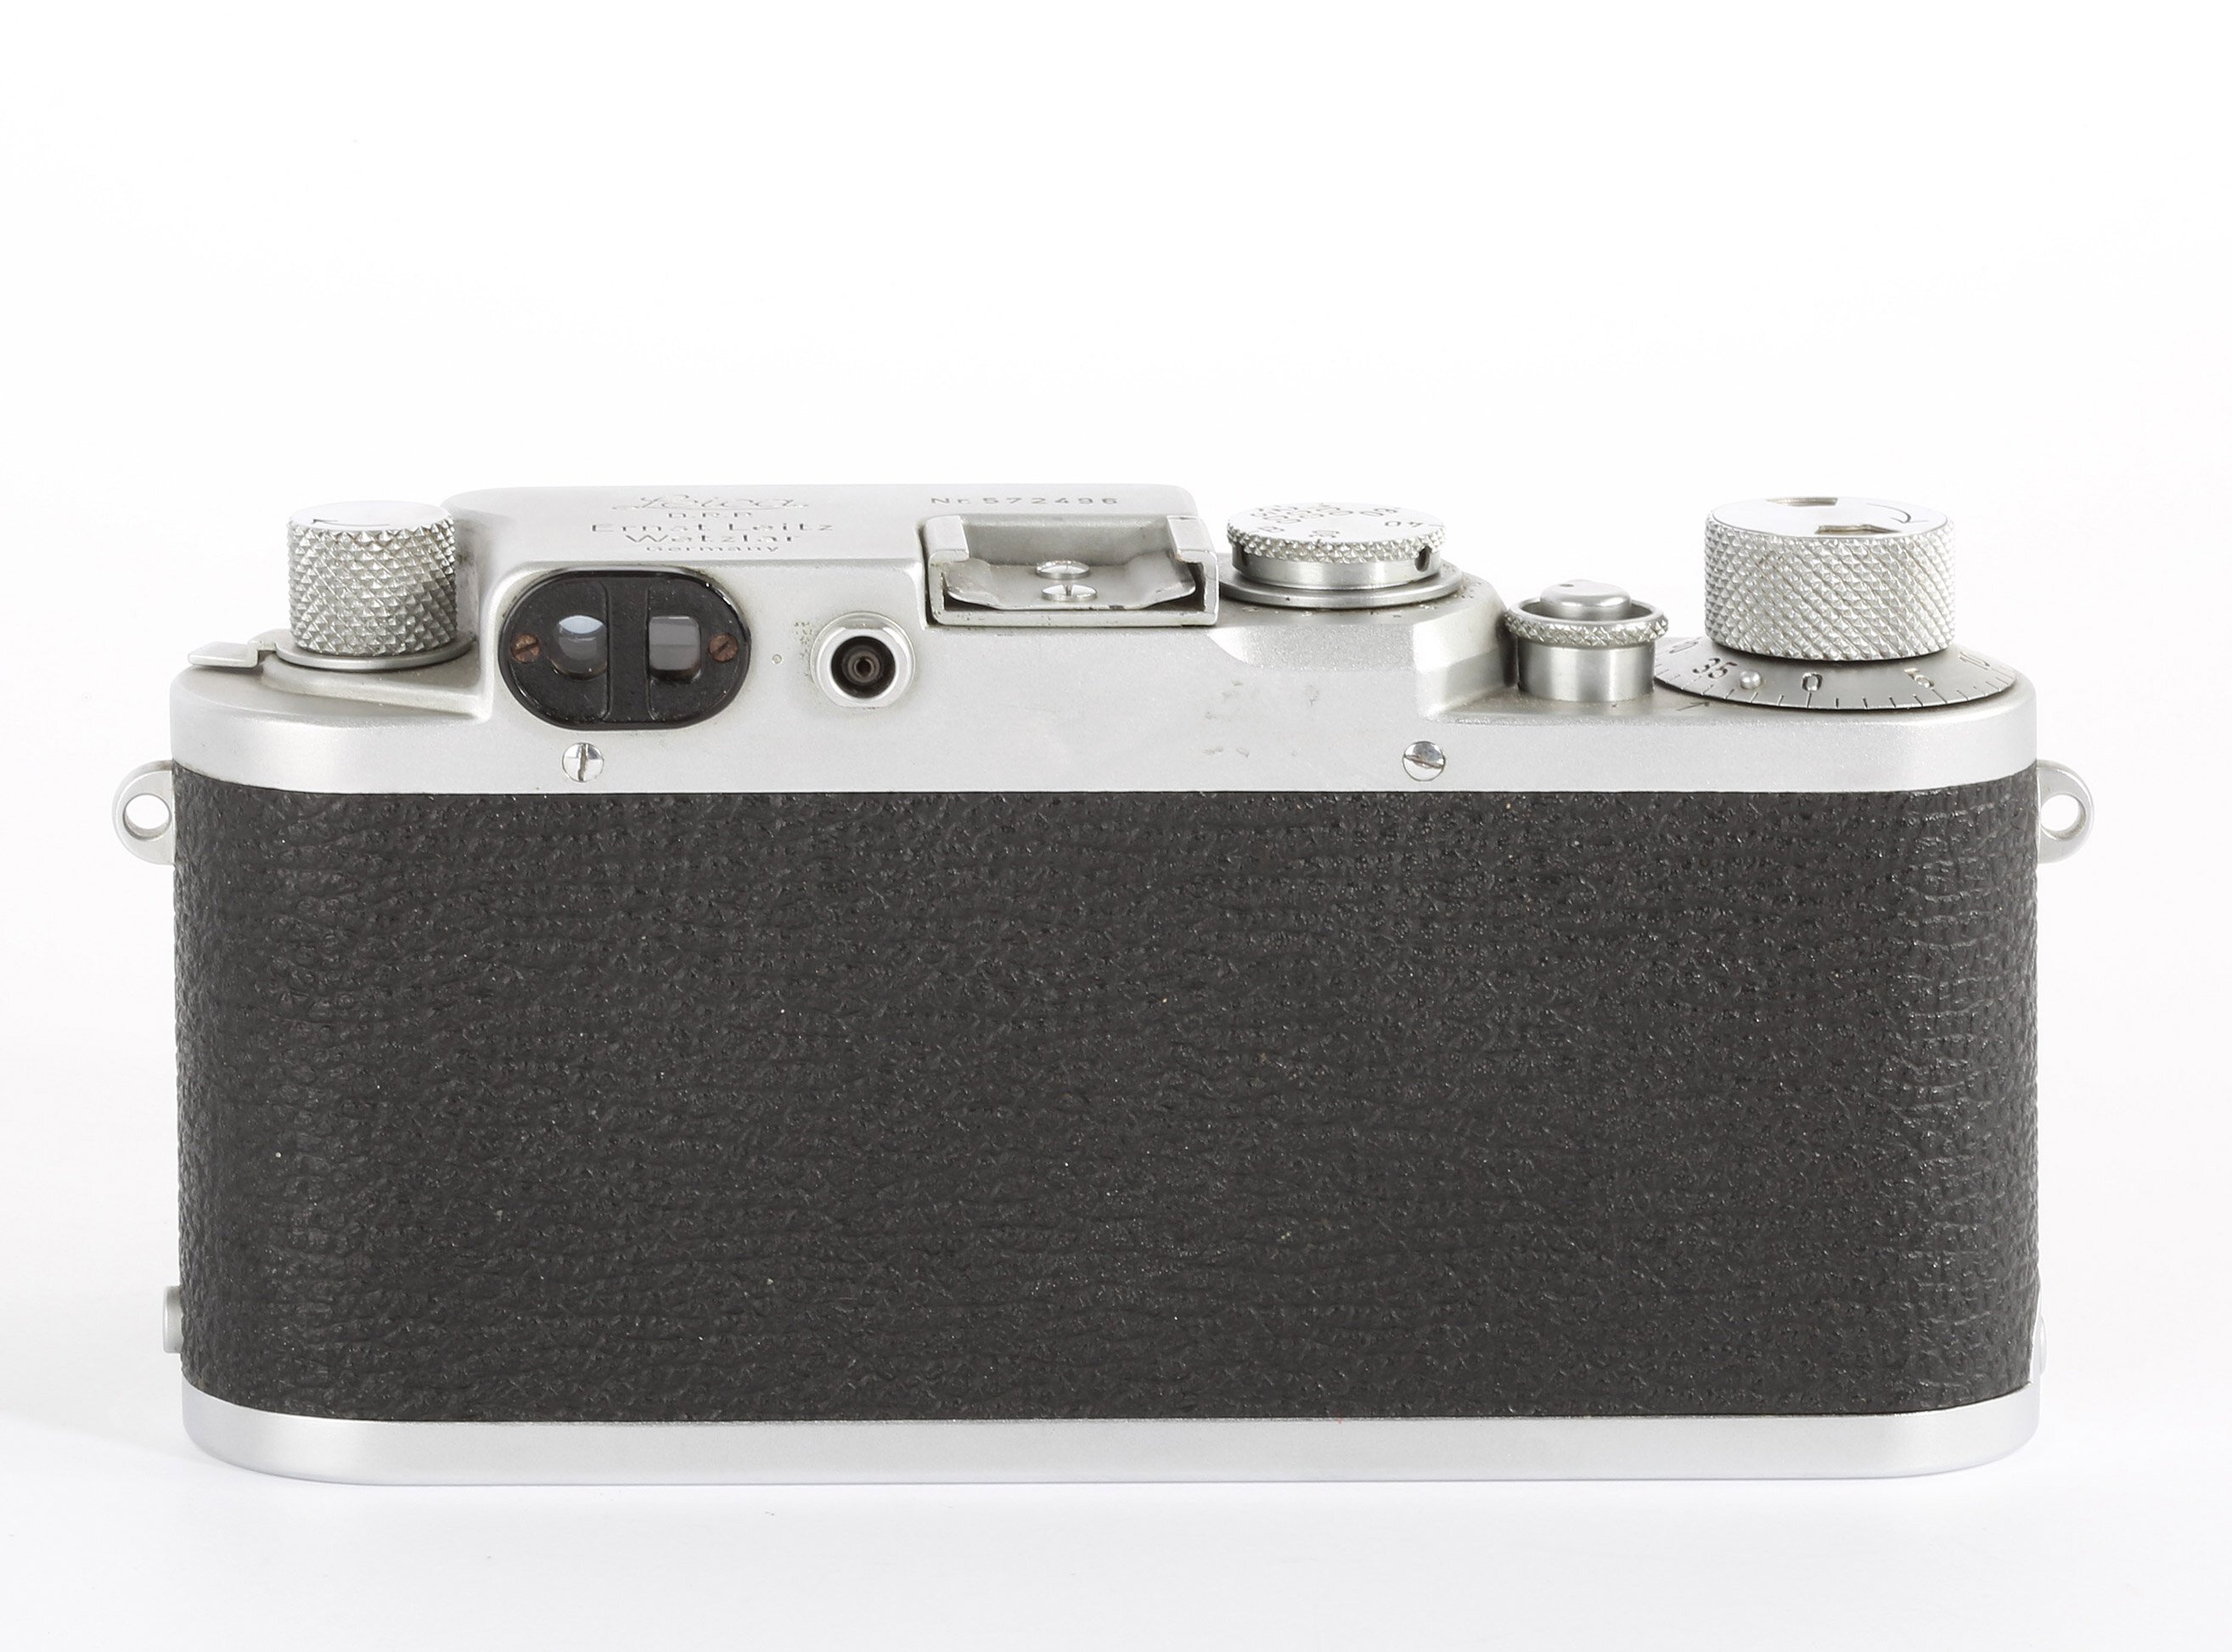 Leitz Leica IIF Summitar 50mm 2,0